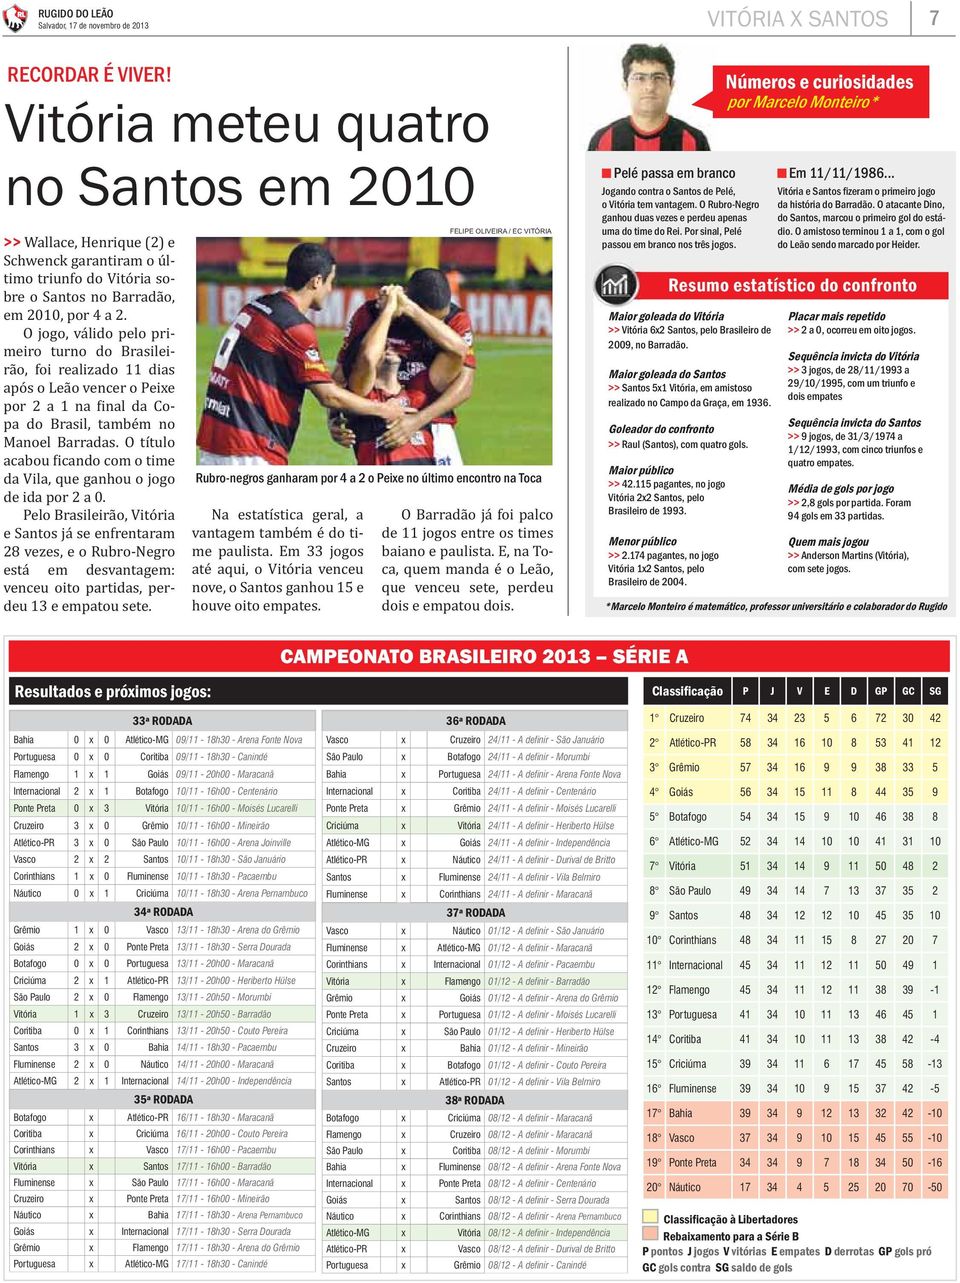 Pelo Brasileirão, Vitória e Santos já se enfrentaram 28 vezes, e o Rubro-Negro está em desvantagem: venceu oito partidas, perdeu 13 e empatou sete.